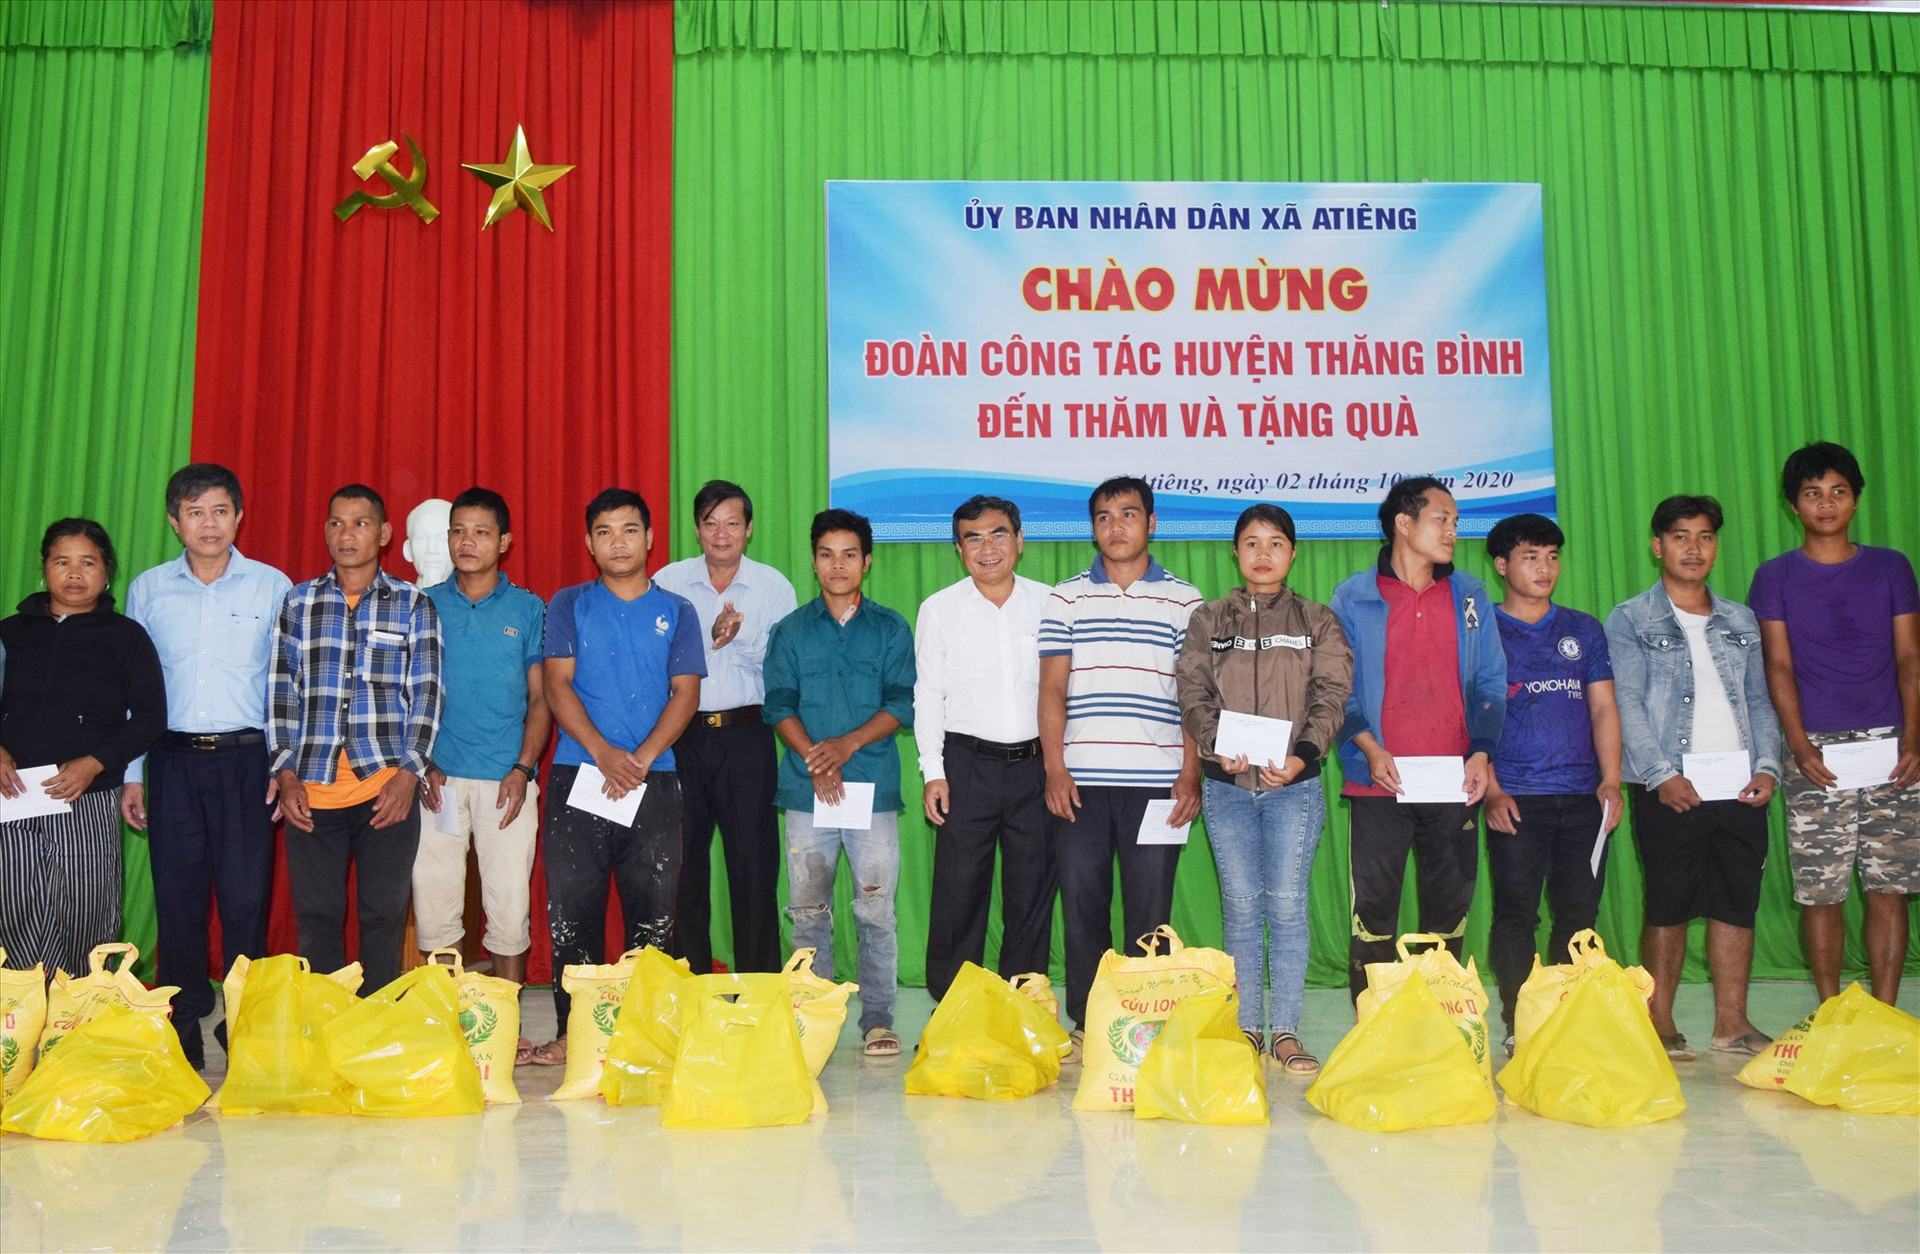 Lãnh đạo huyện Thăng Bình trao quà cho người dân xã A Tiêng.